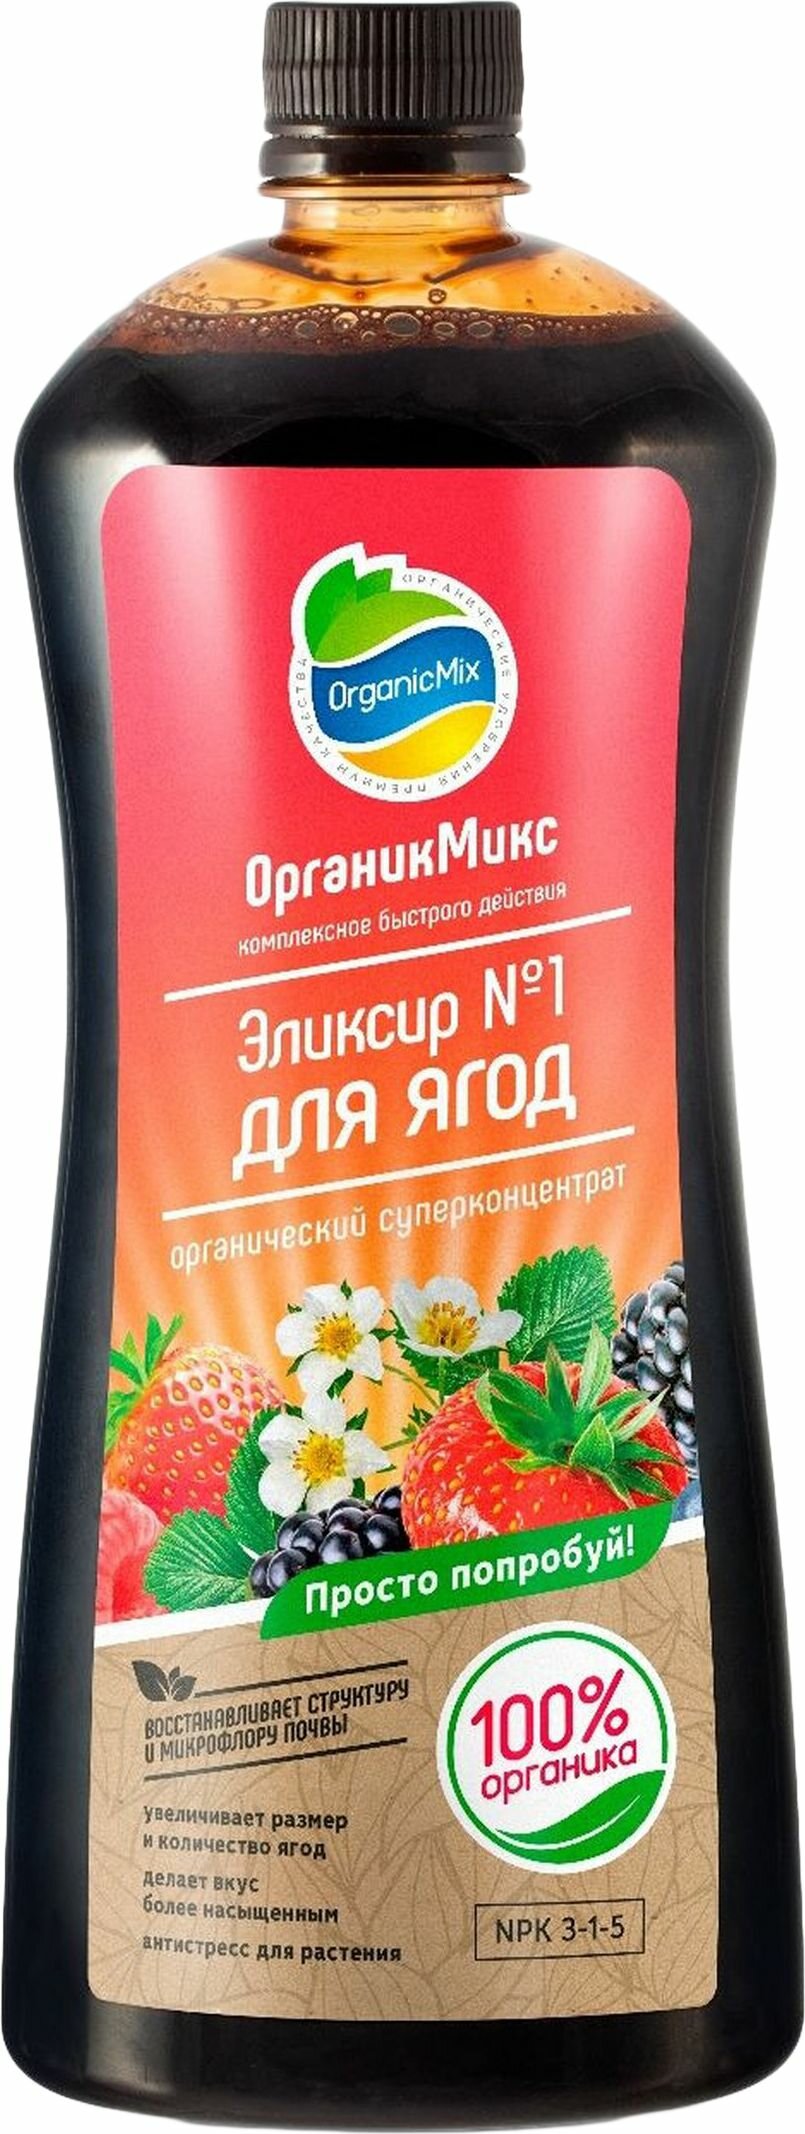 Удобрение OrganicMix Эликсир №1 для ягод 0,9 л